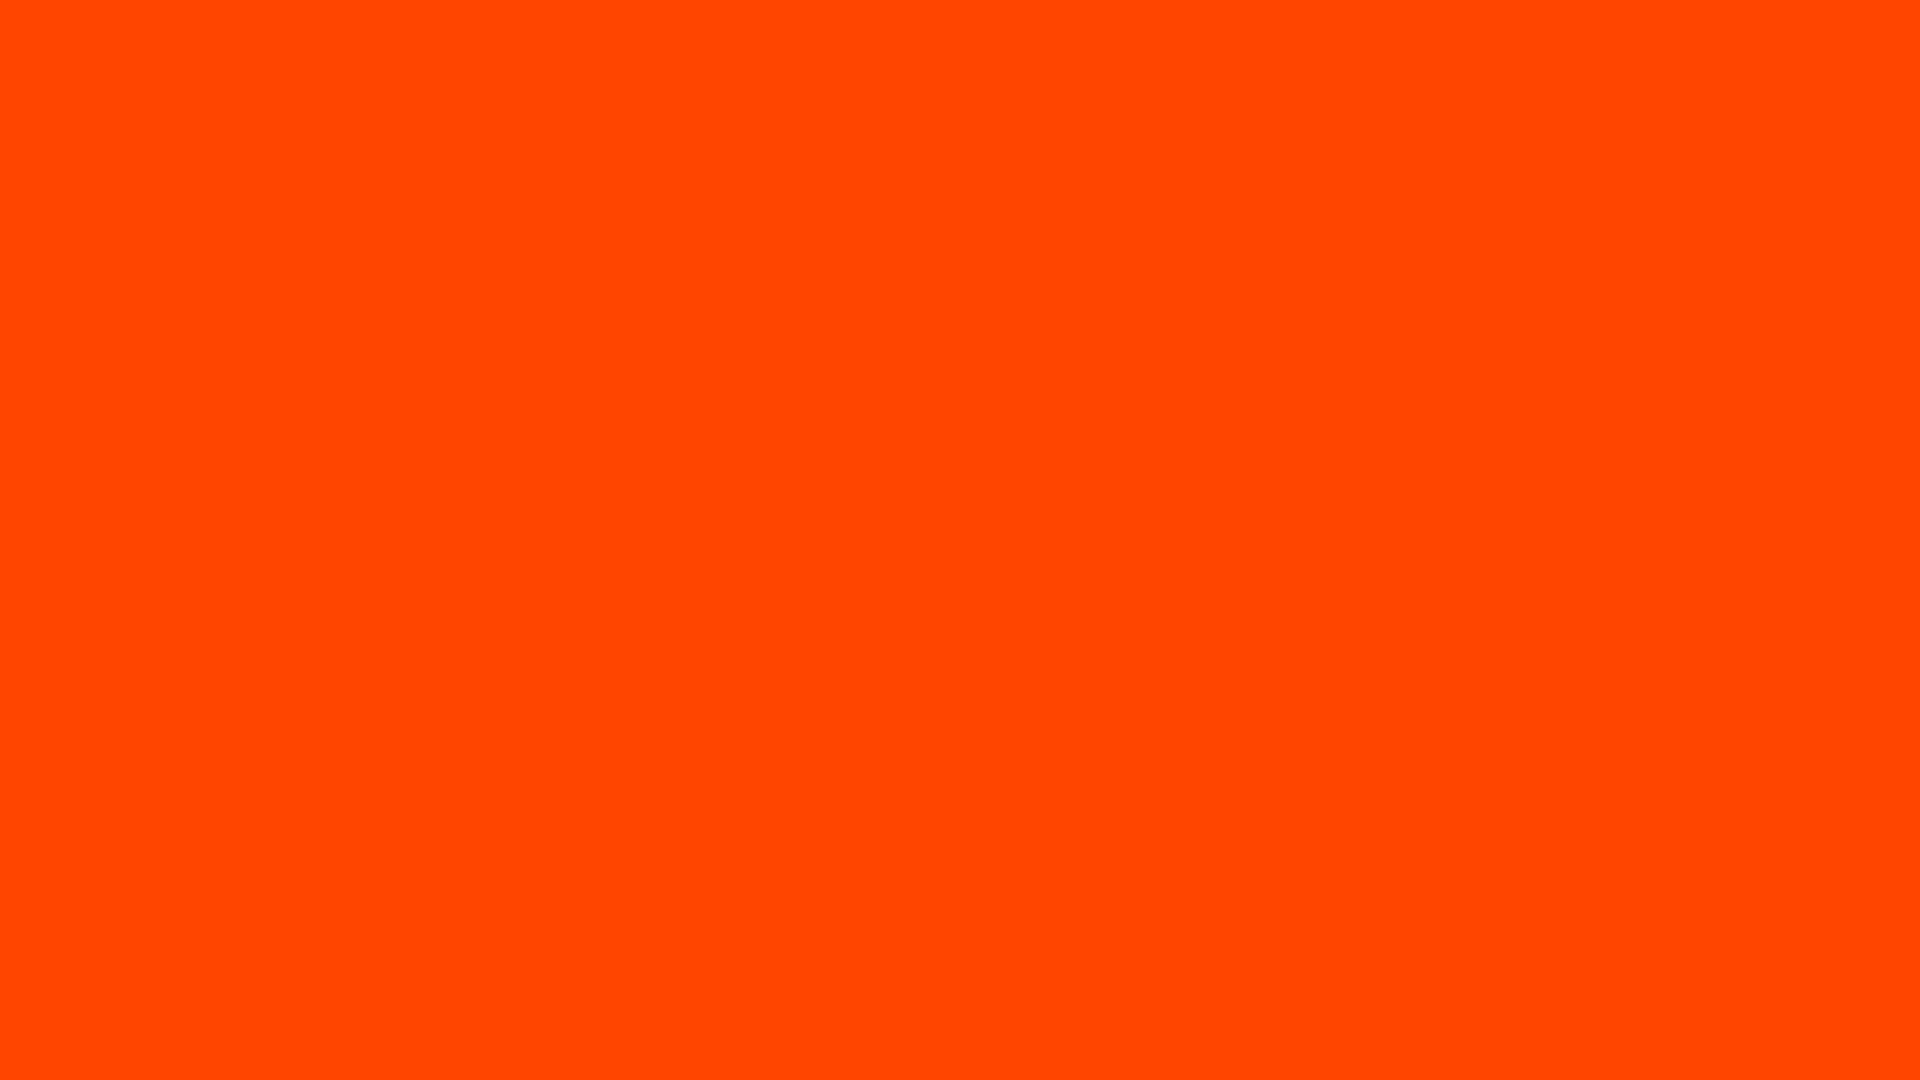 Nền màu cam đậm: Nếu bạn là người thích màu cam và muốn tìm kiếm một hình nền đậm chất cam để trang trí màn hình, bức ảnh này chắc chắn sẽ khiến bạn hài lòng. Sự pha trộn giữa các gam màu cam, cam đậm và trắng tạo nên sự hài hòa và hấp dẫn cho bức ảnh này.